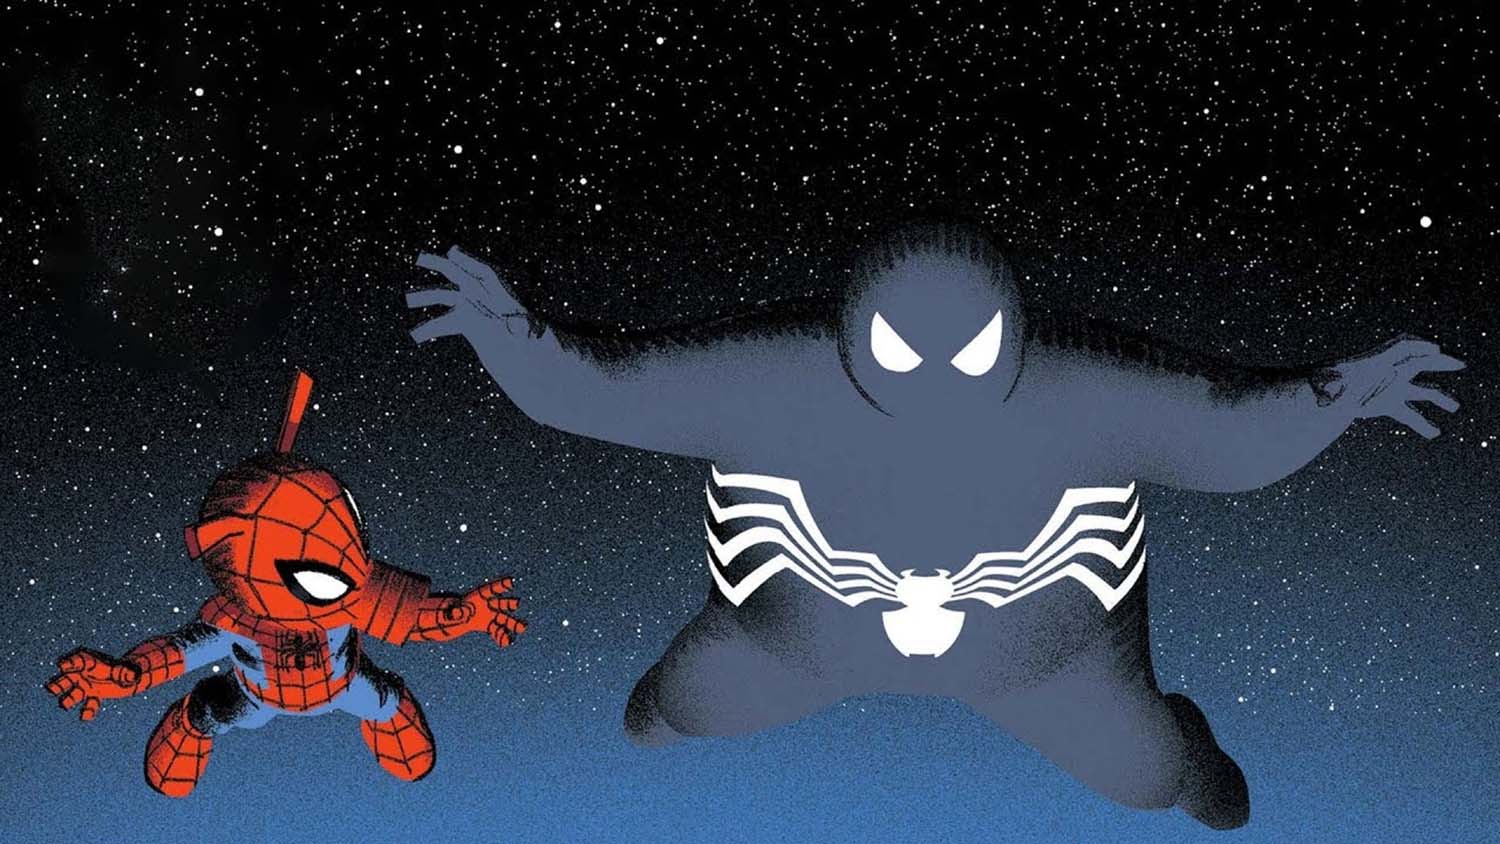 Porco-Aranha e Venom em Homem-Aranha Corrente